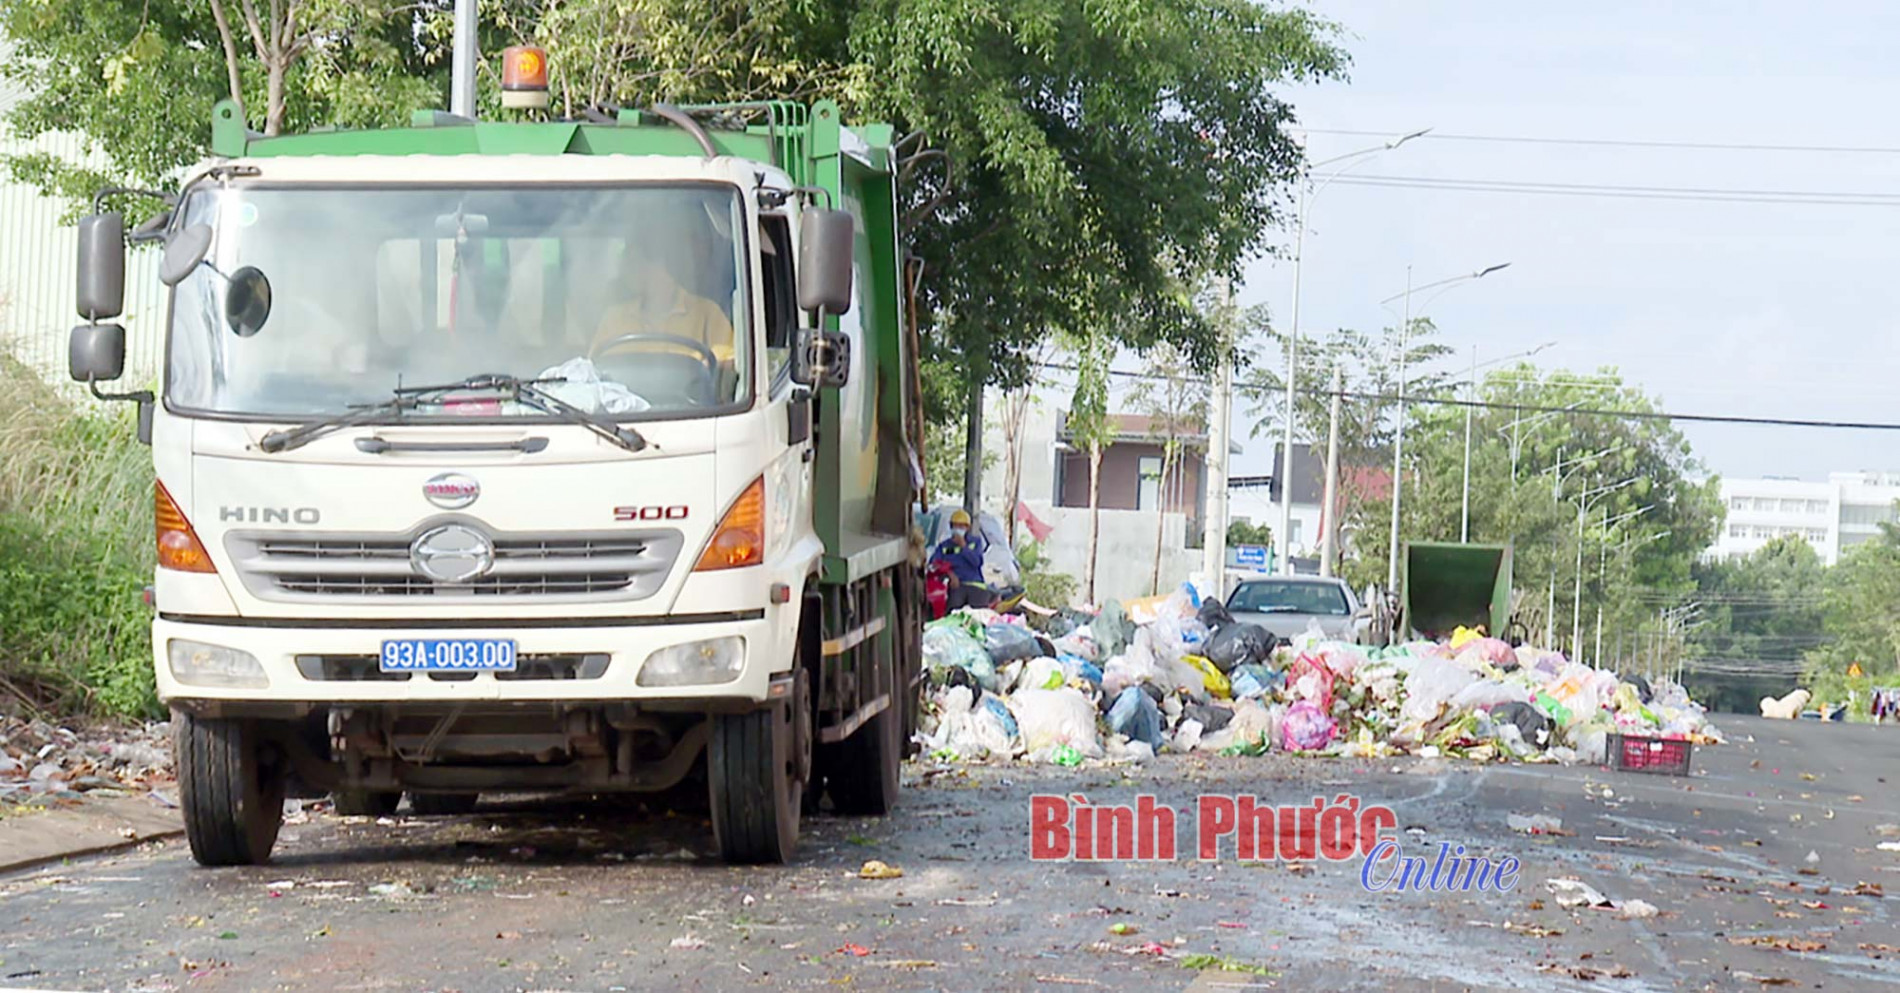 Gian nan “bài toán” rác thải ở khu dân cư